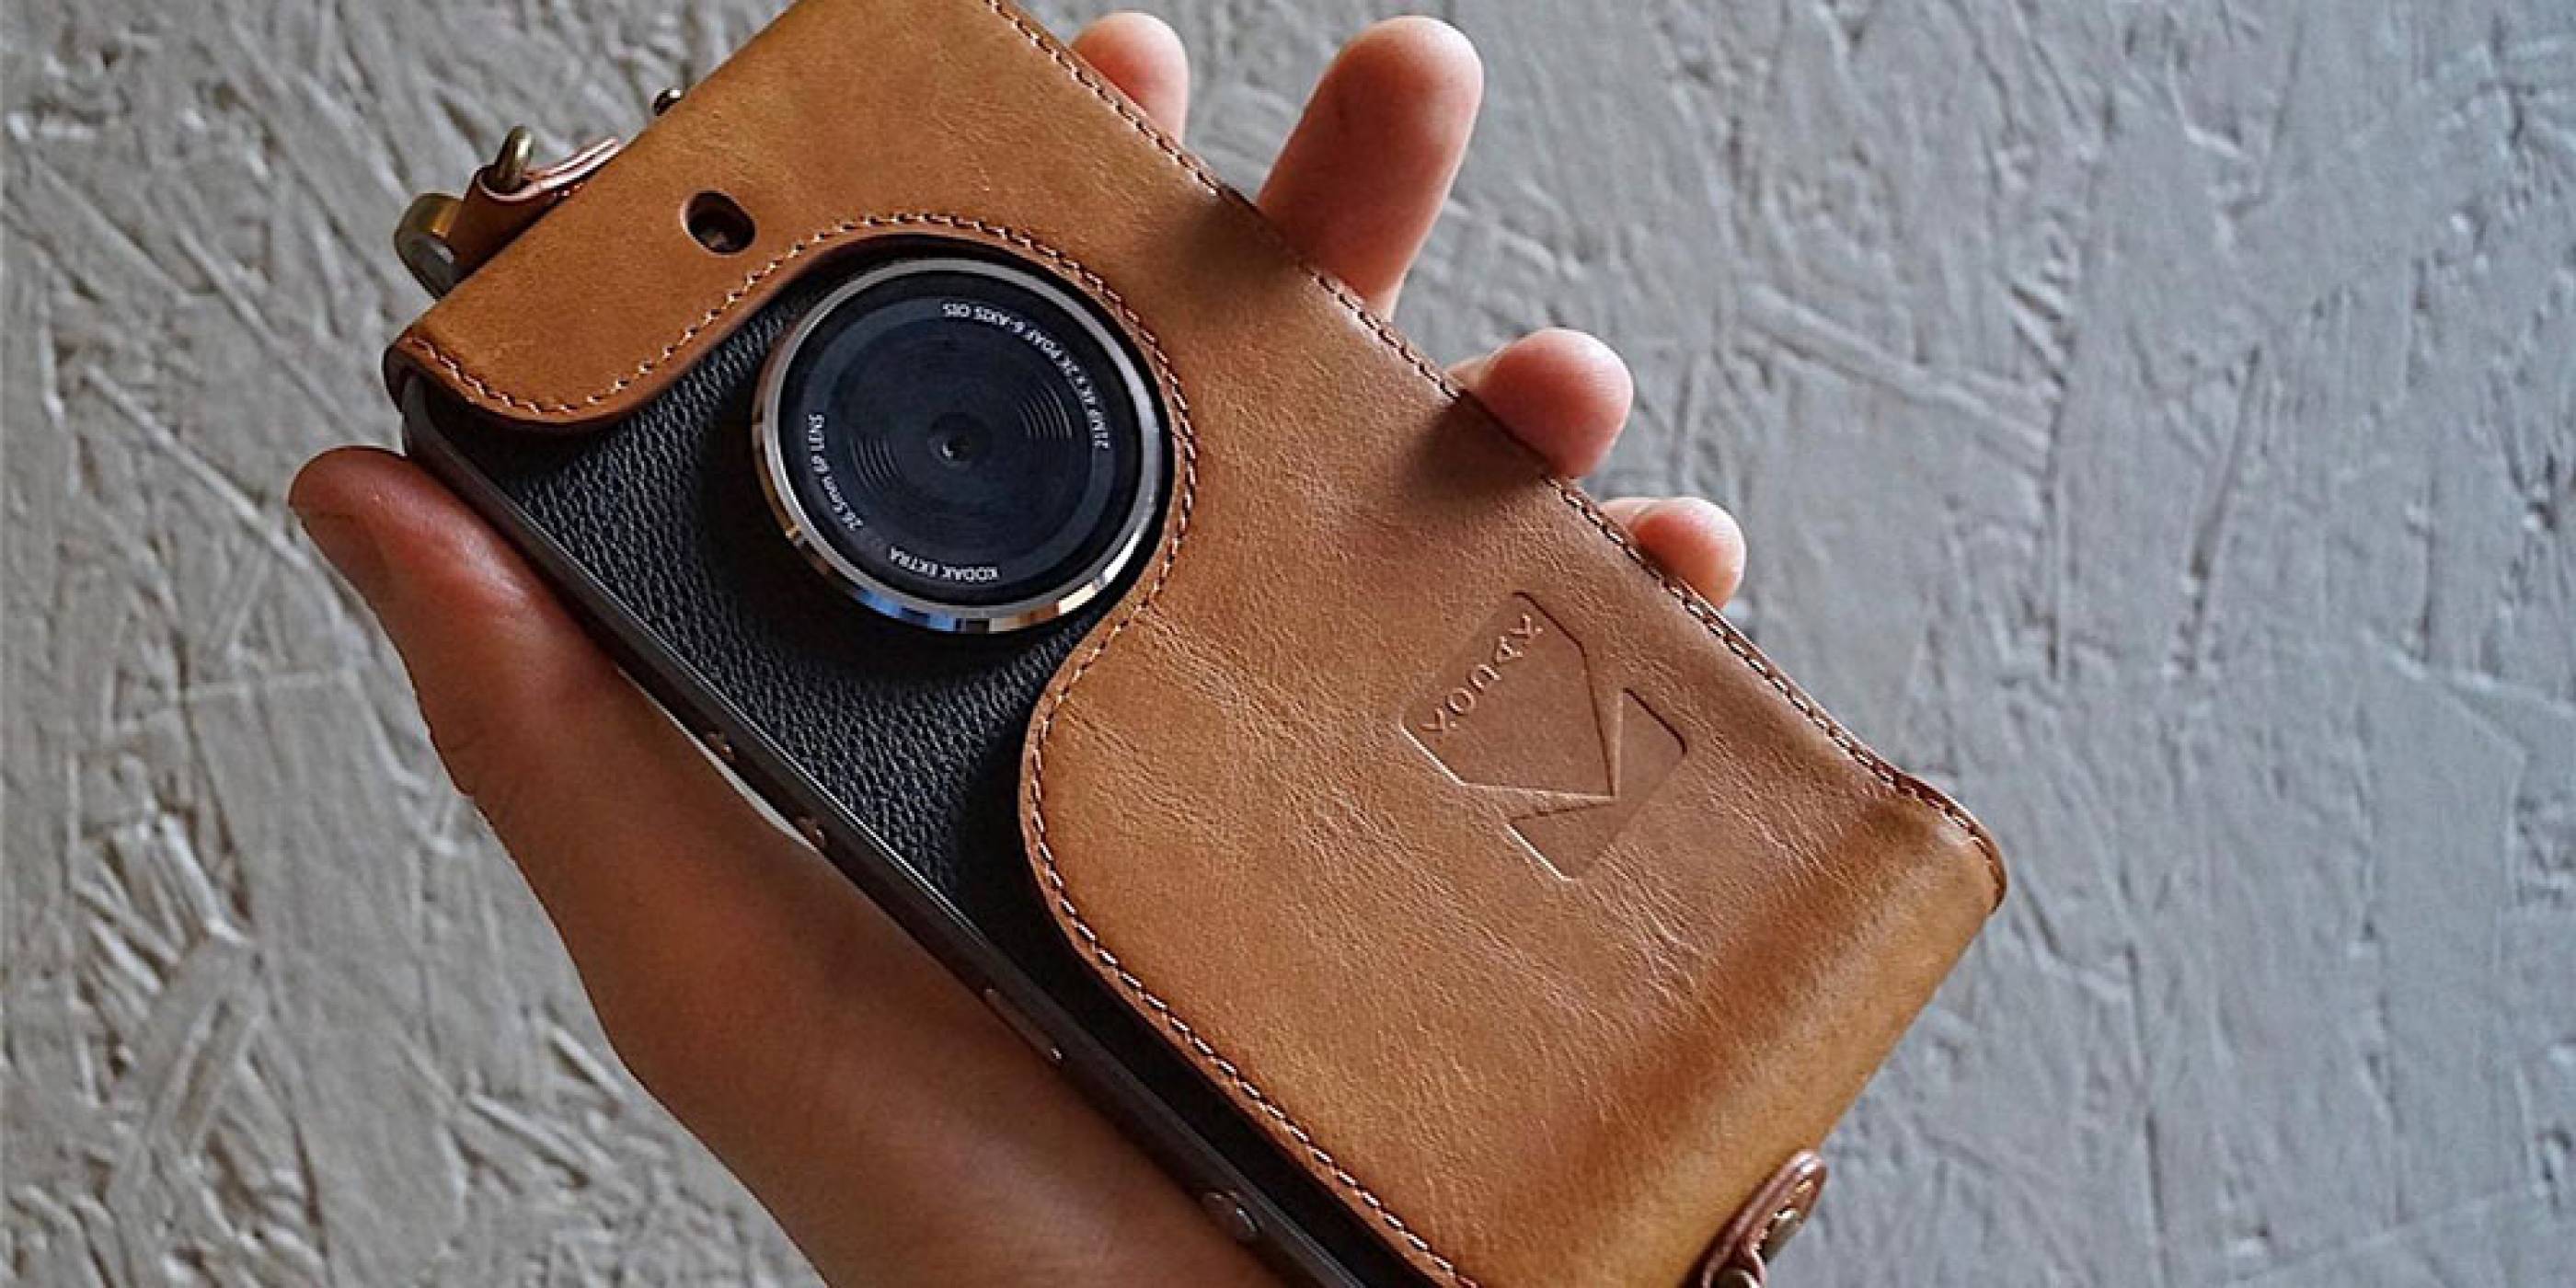 Ektra, смартфонът на Kodak с огромната 21 MP задна камера, е достъпен на пазара в САЩ